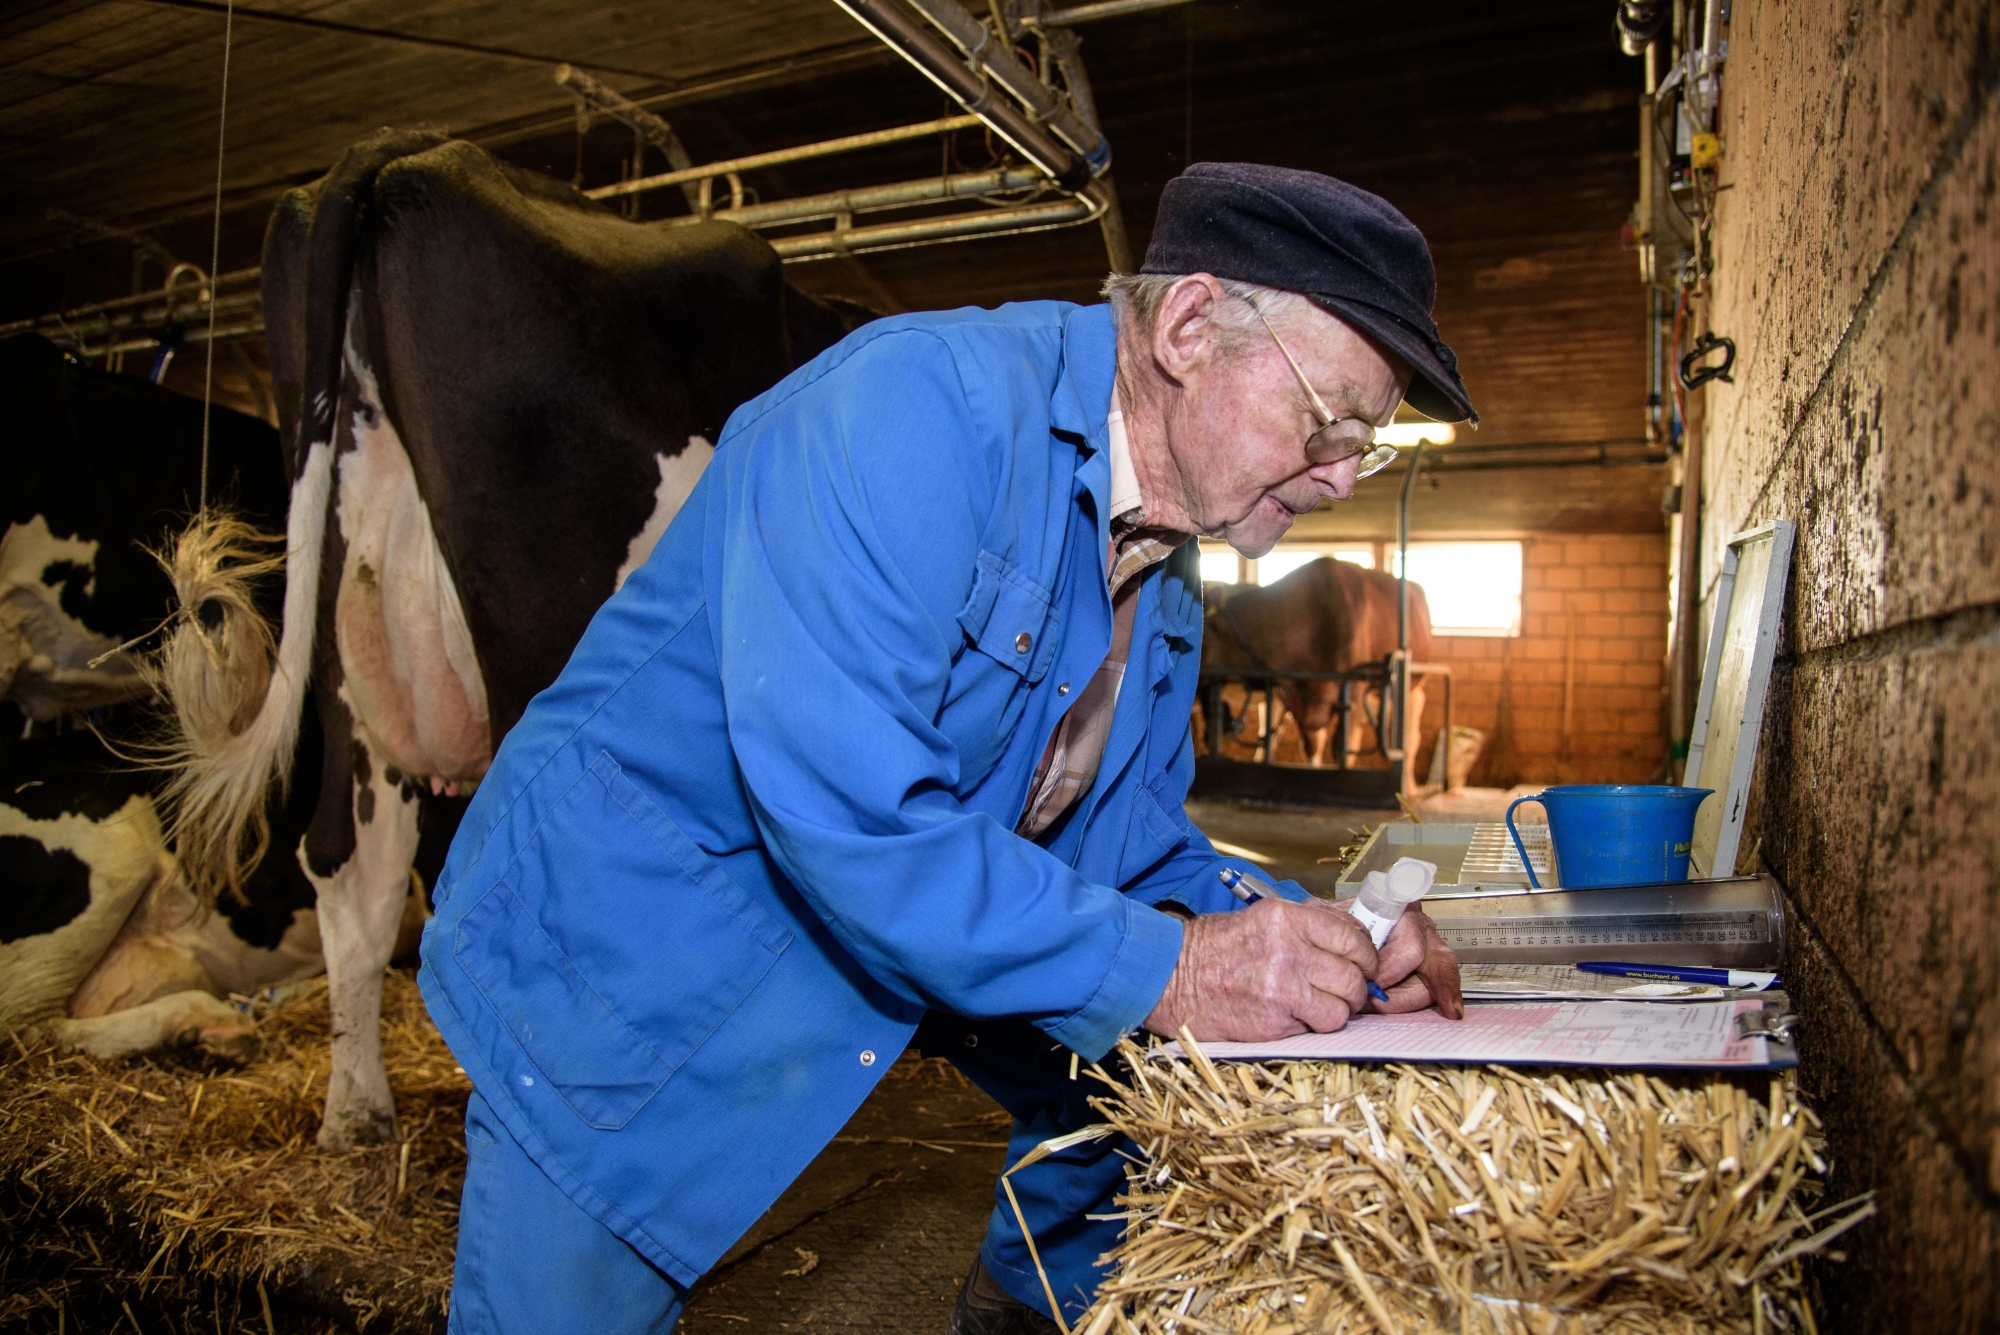 Denens, mercredi 11 octobre 2017, portrait d'Agénor Bachelard qui officie comme contrôleur laitier à 85 ans, photos Cédric Sandoz